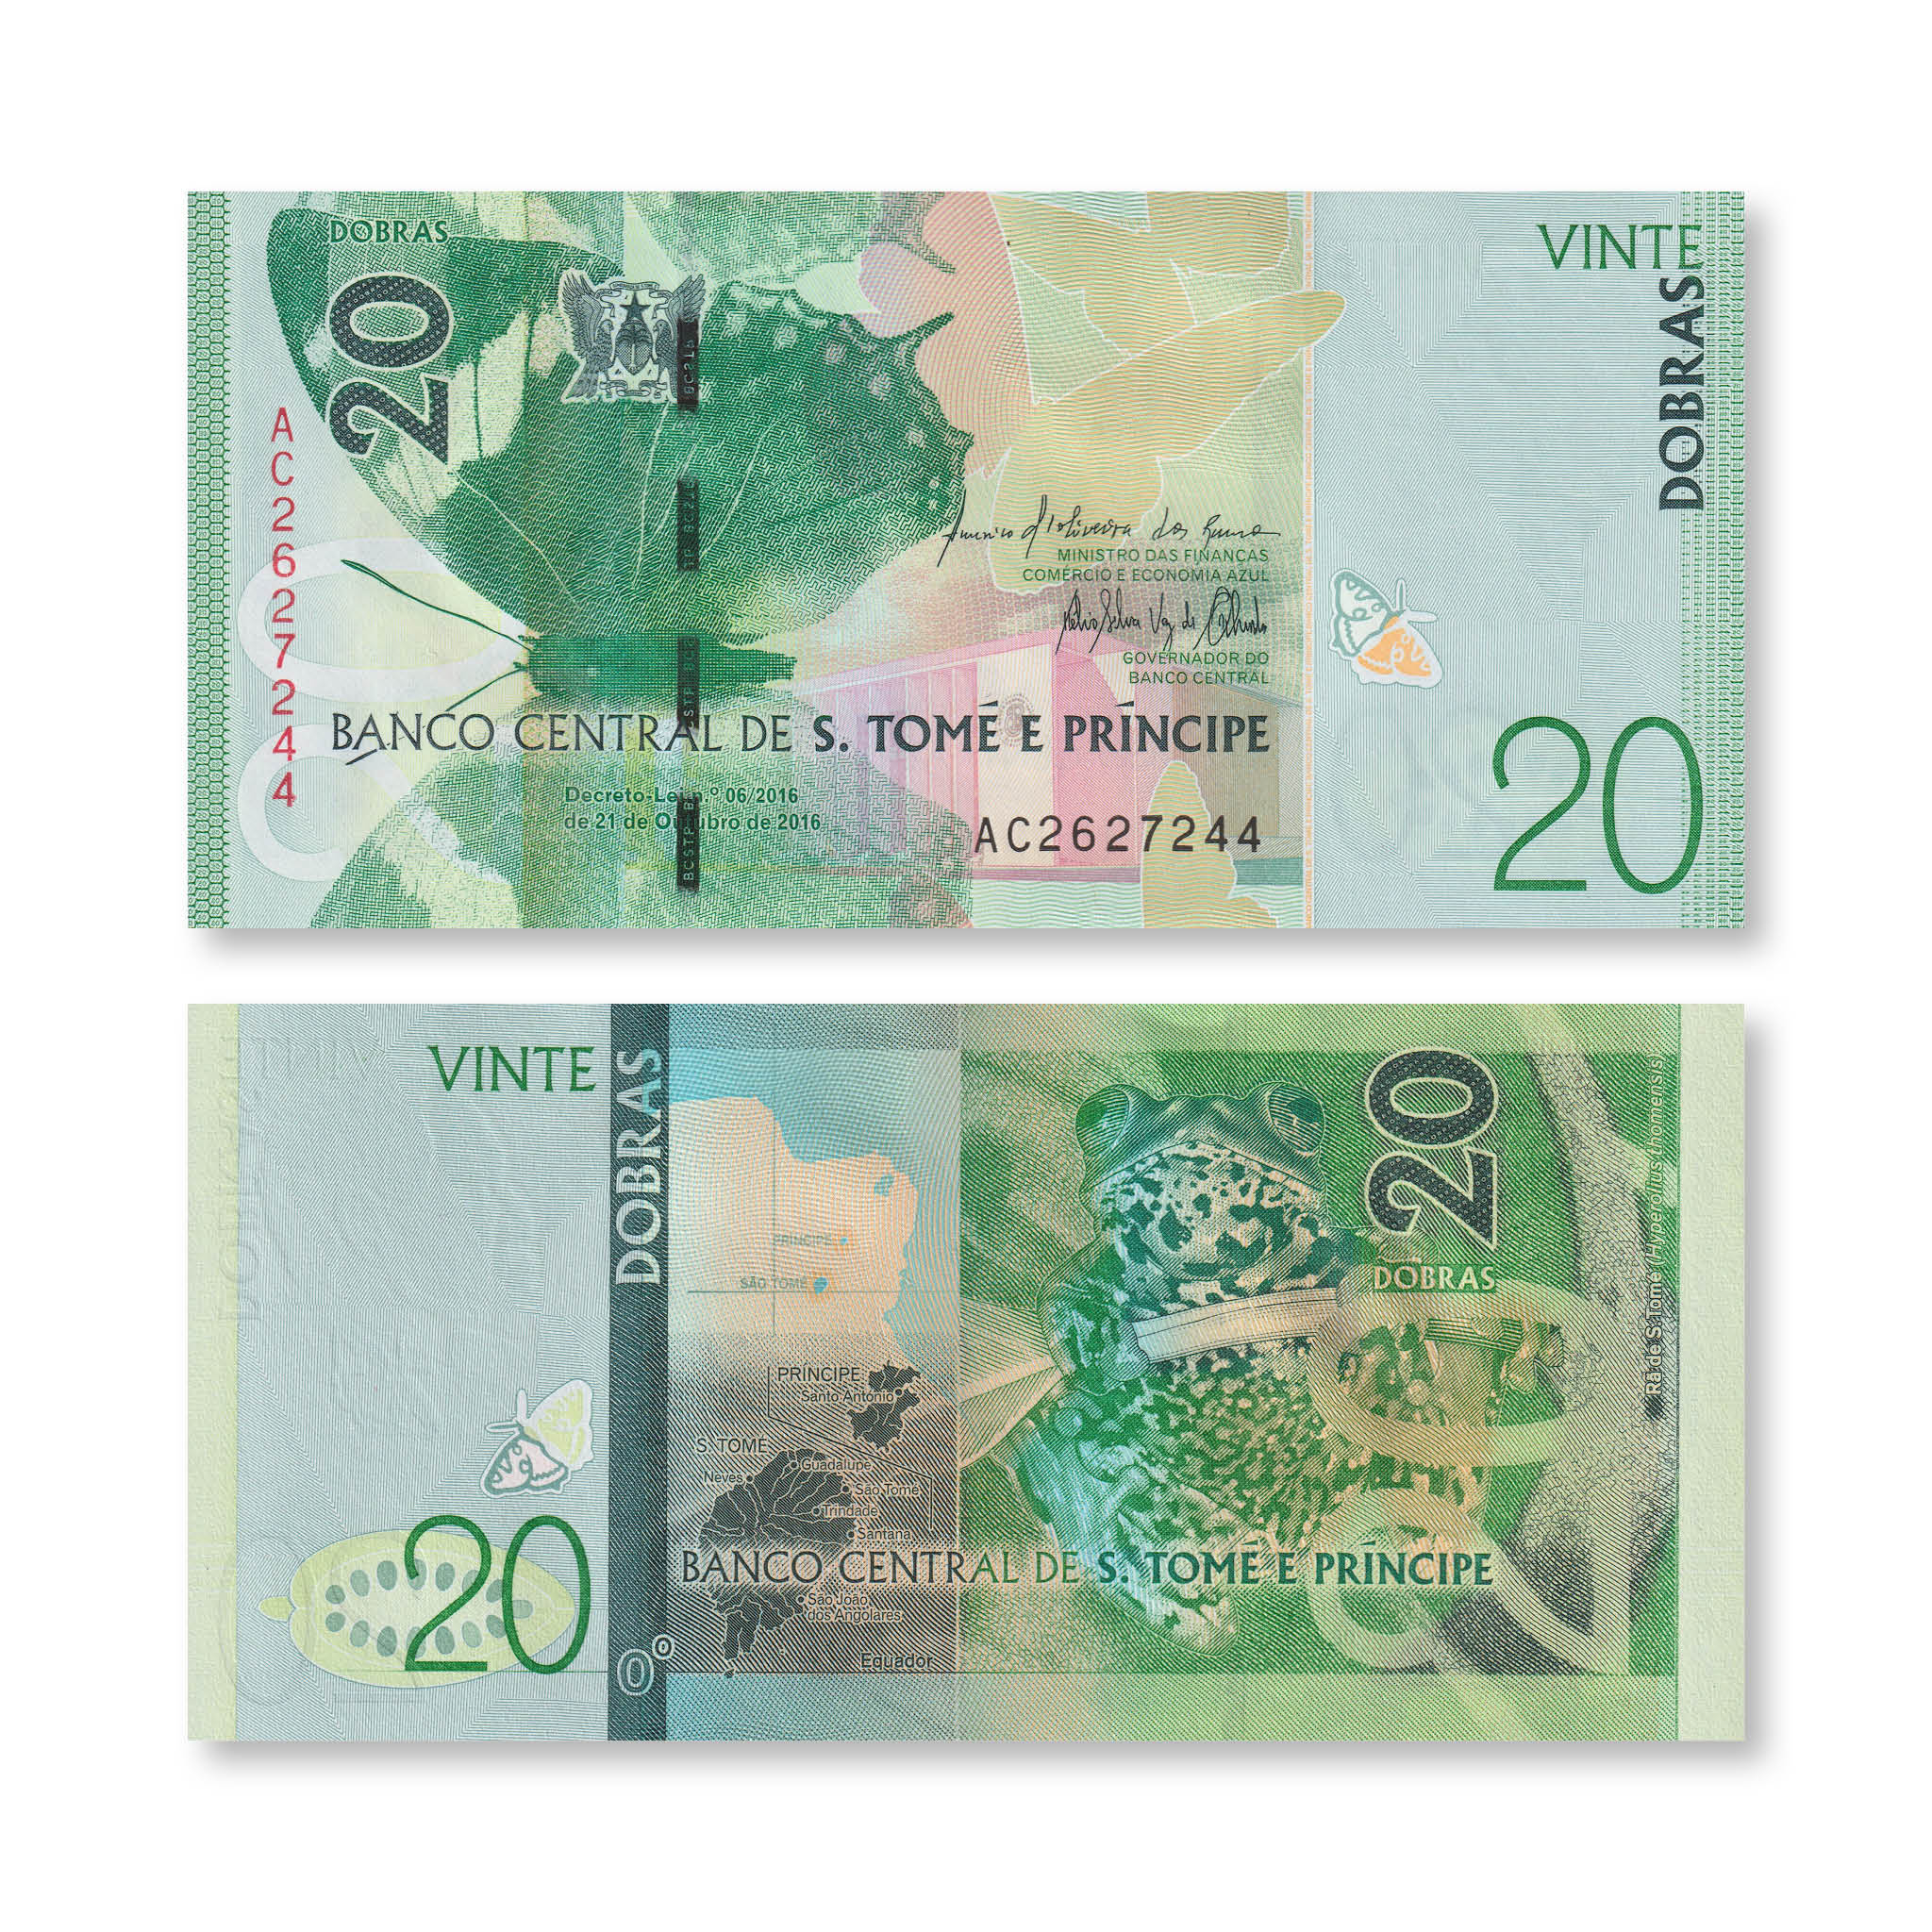 São Tomé & Príncipe 20 Dobras, 2016 (2018), B310a, P72, UNC - Robert's World Money - World Banknotes